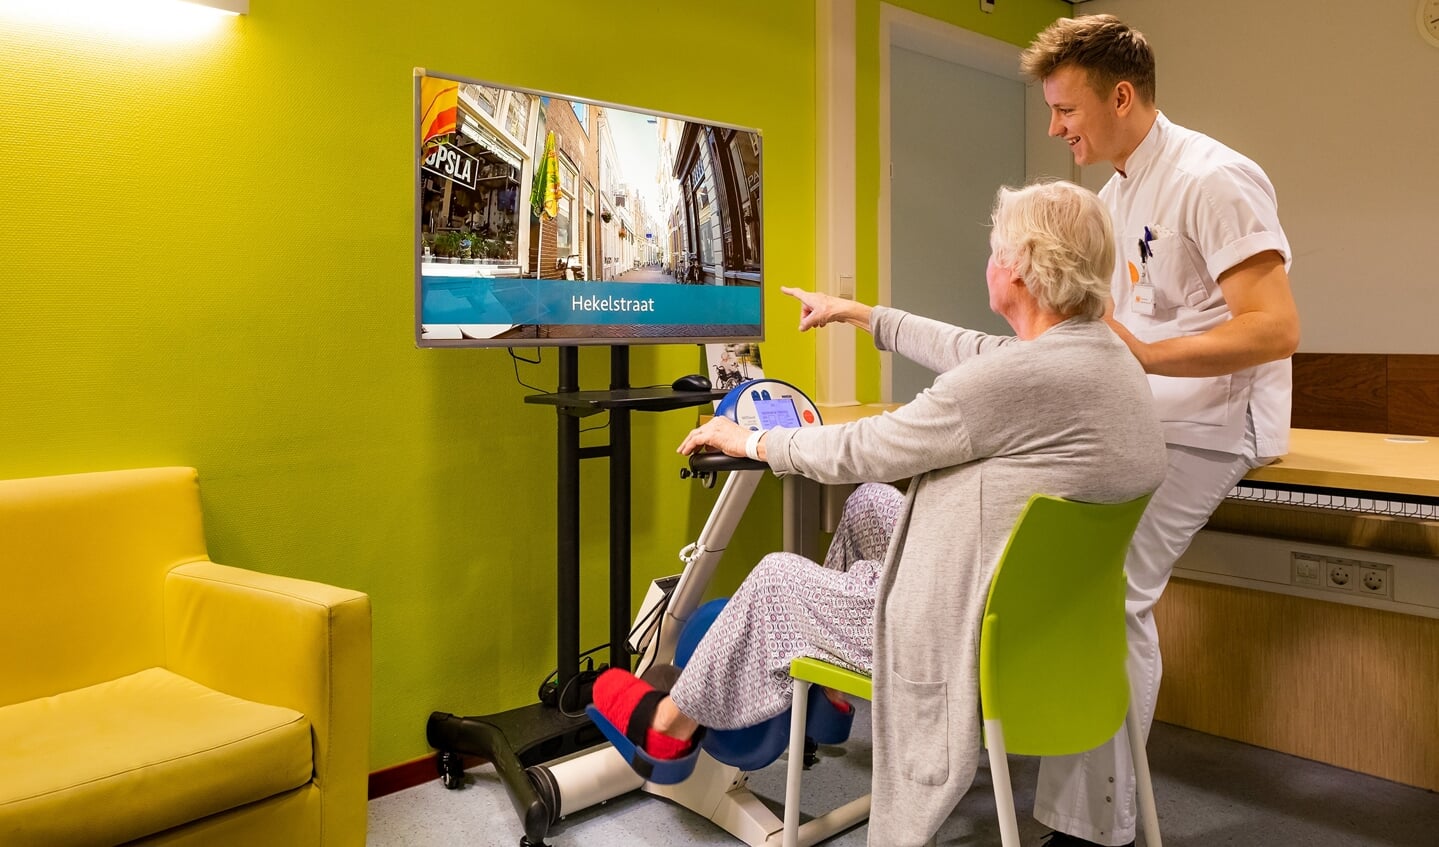 Virtuele fietstochten brengen patiënten enthousiast in beweging. 